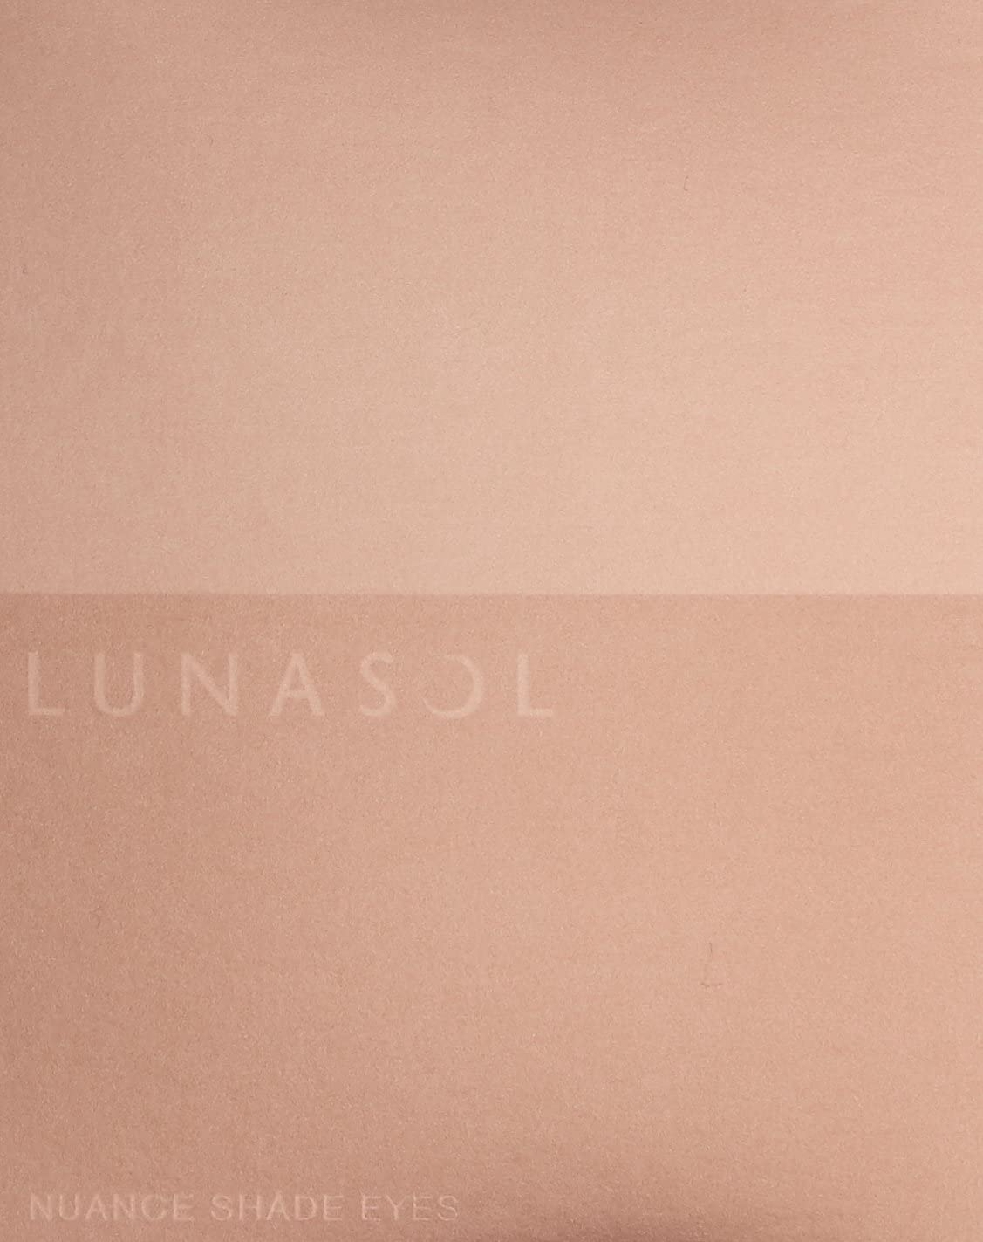 LUNASOL(ルナソル) ニュアンスシェイドアイズの商品画像サムネ2 